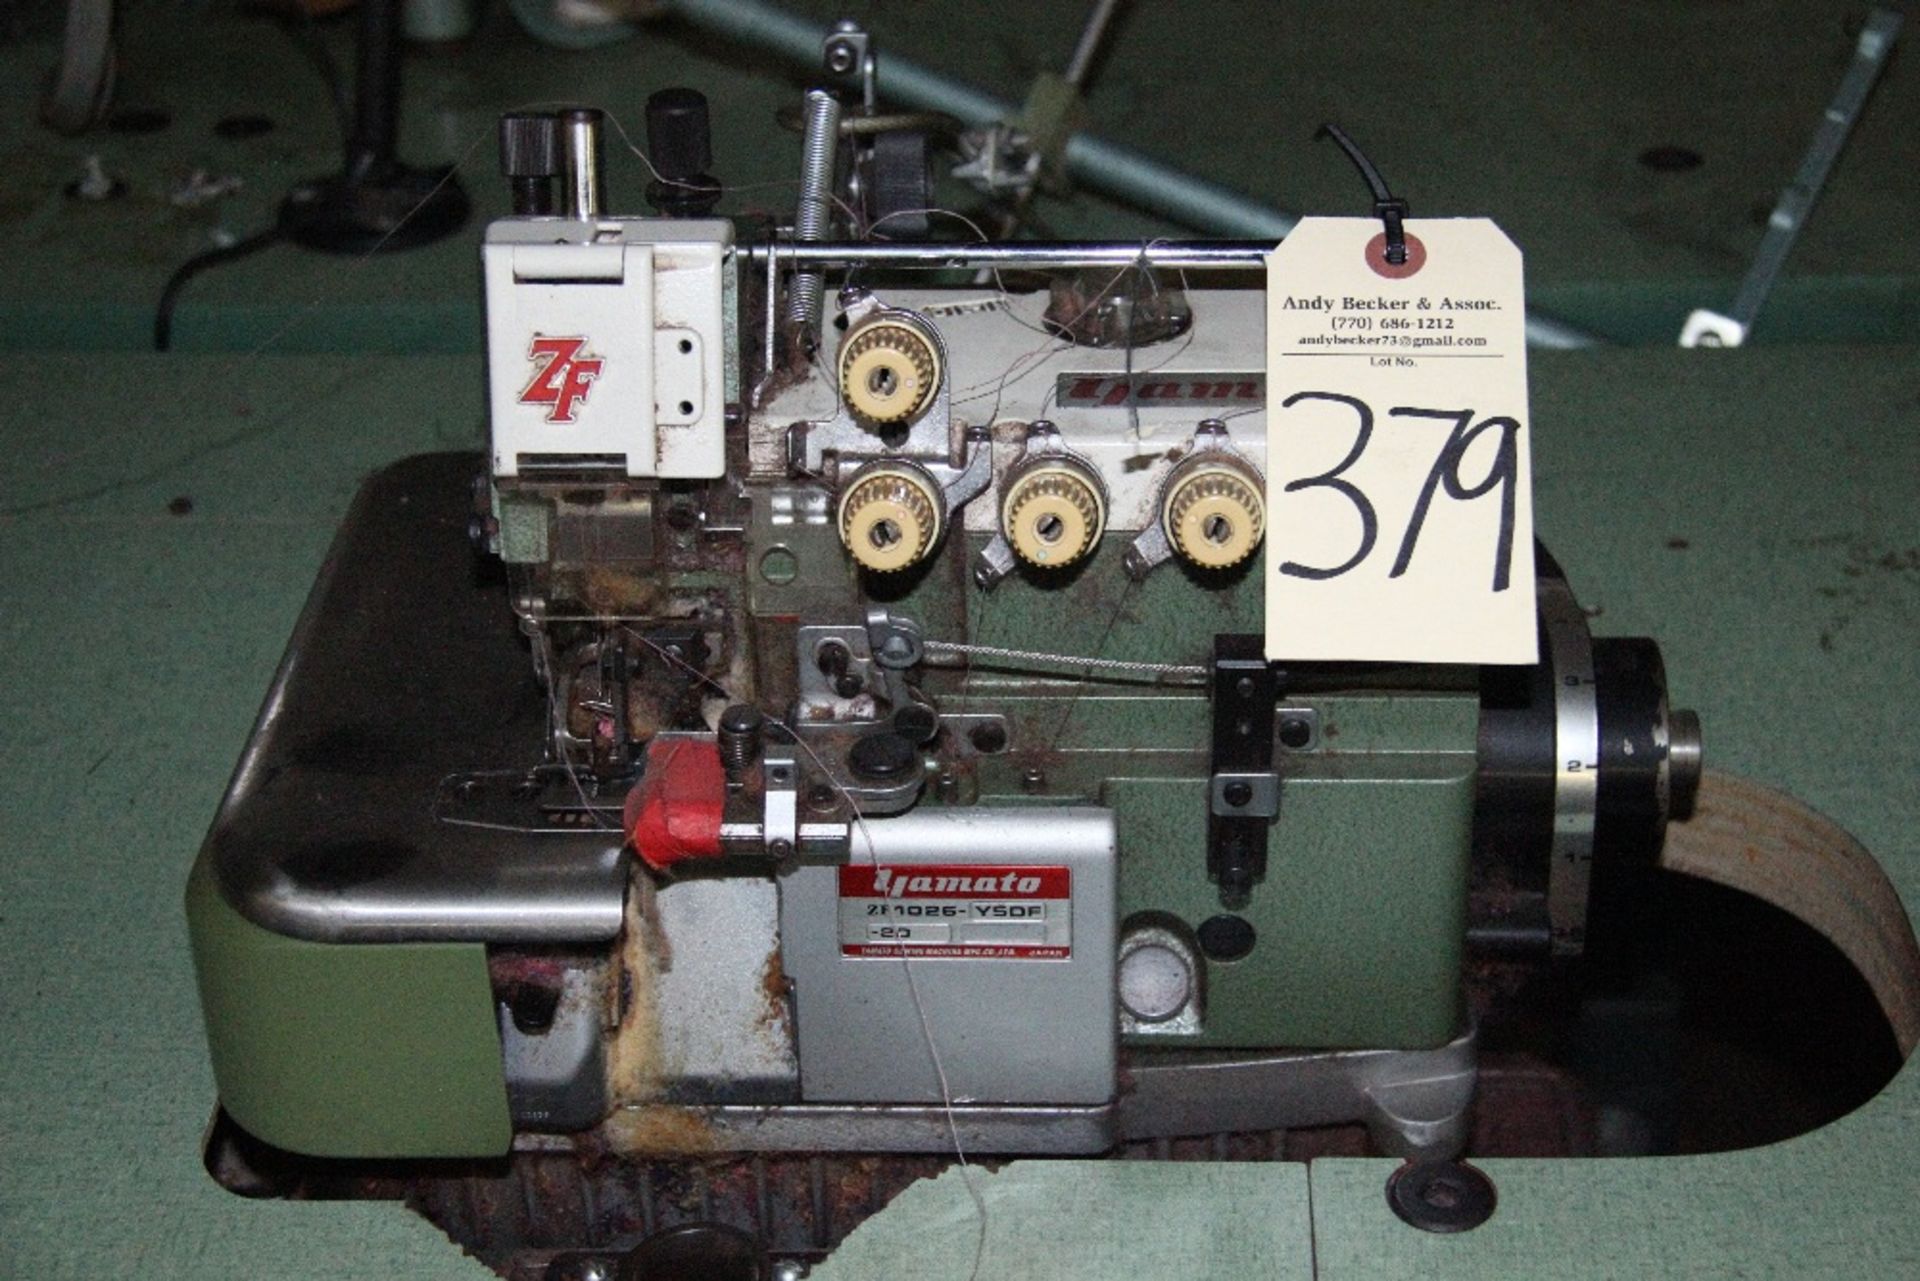 Yamato ZF1026 4-Thread Mock Safety Stitch Sewing Machine